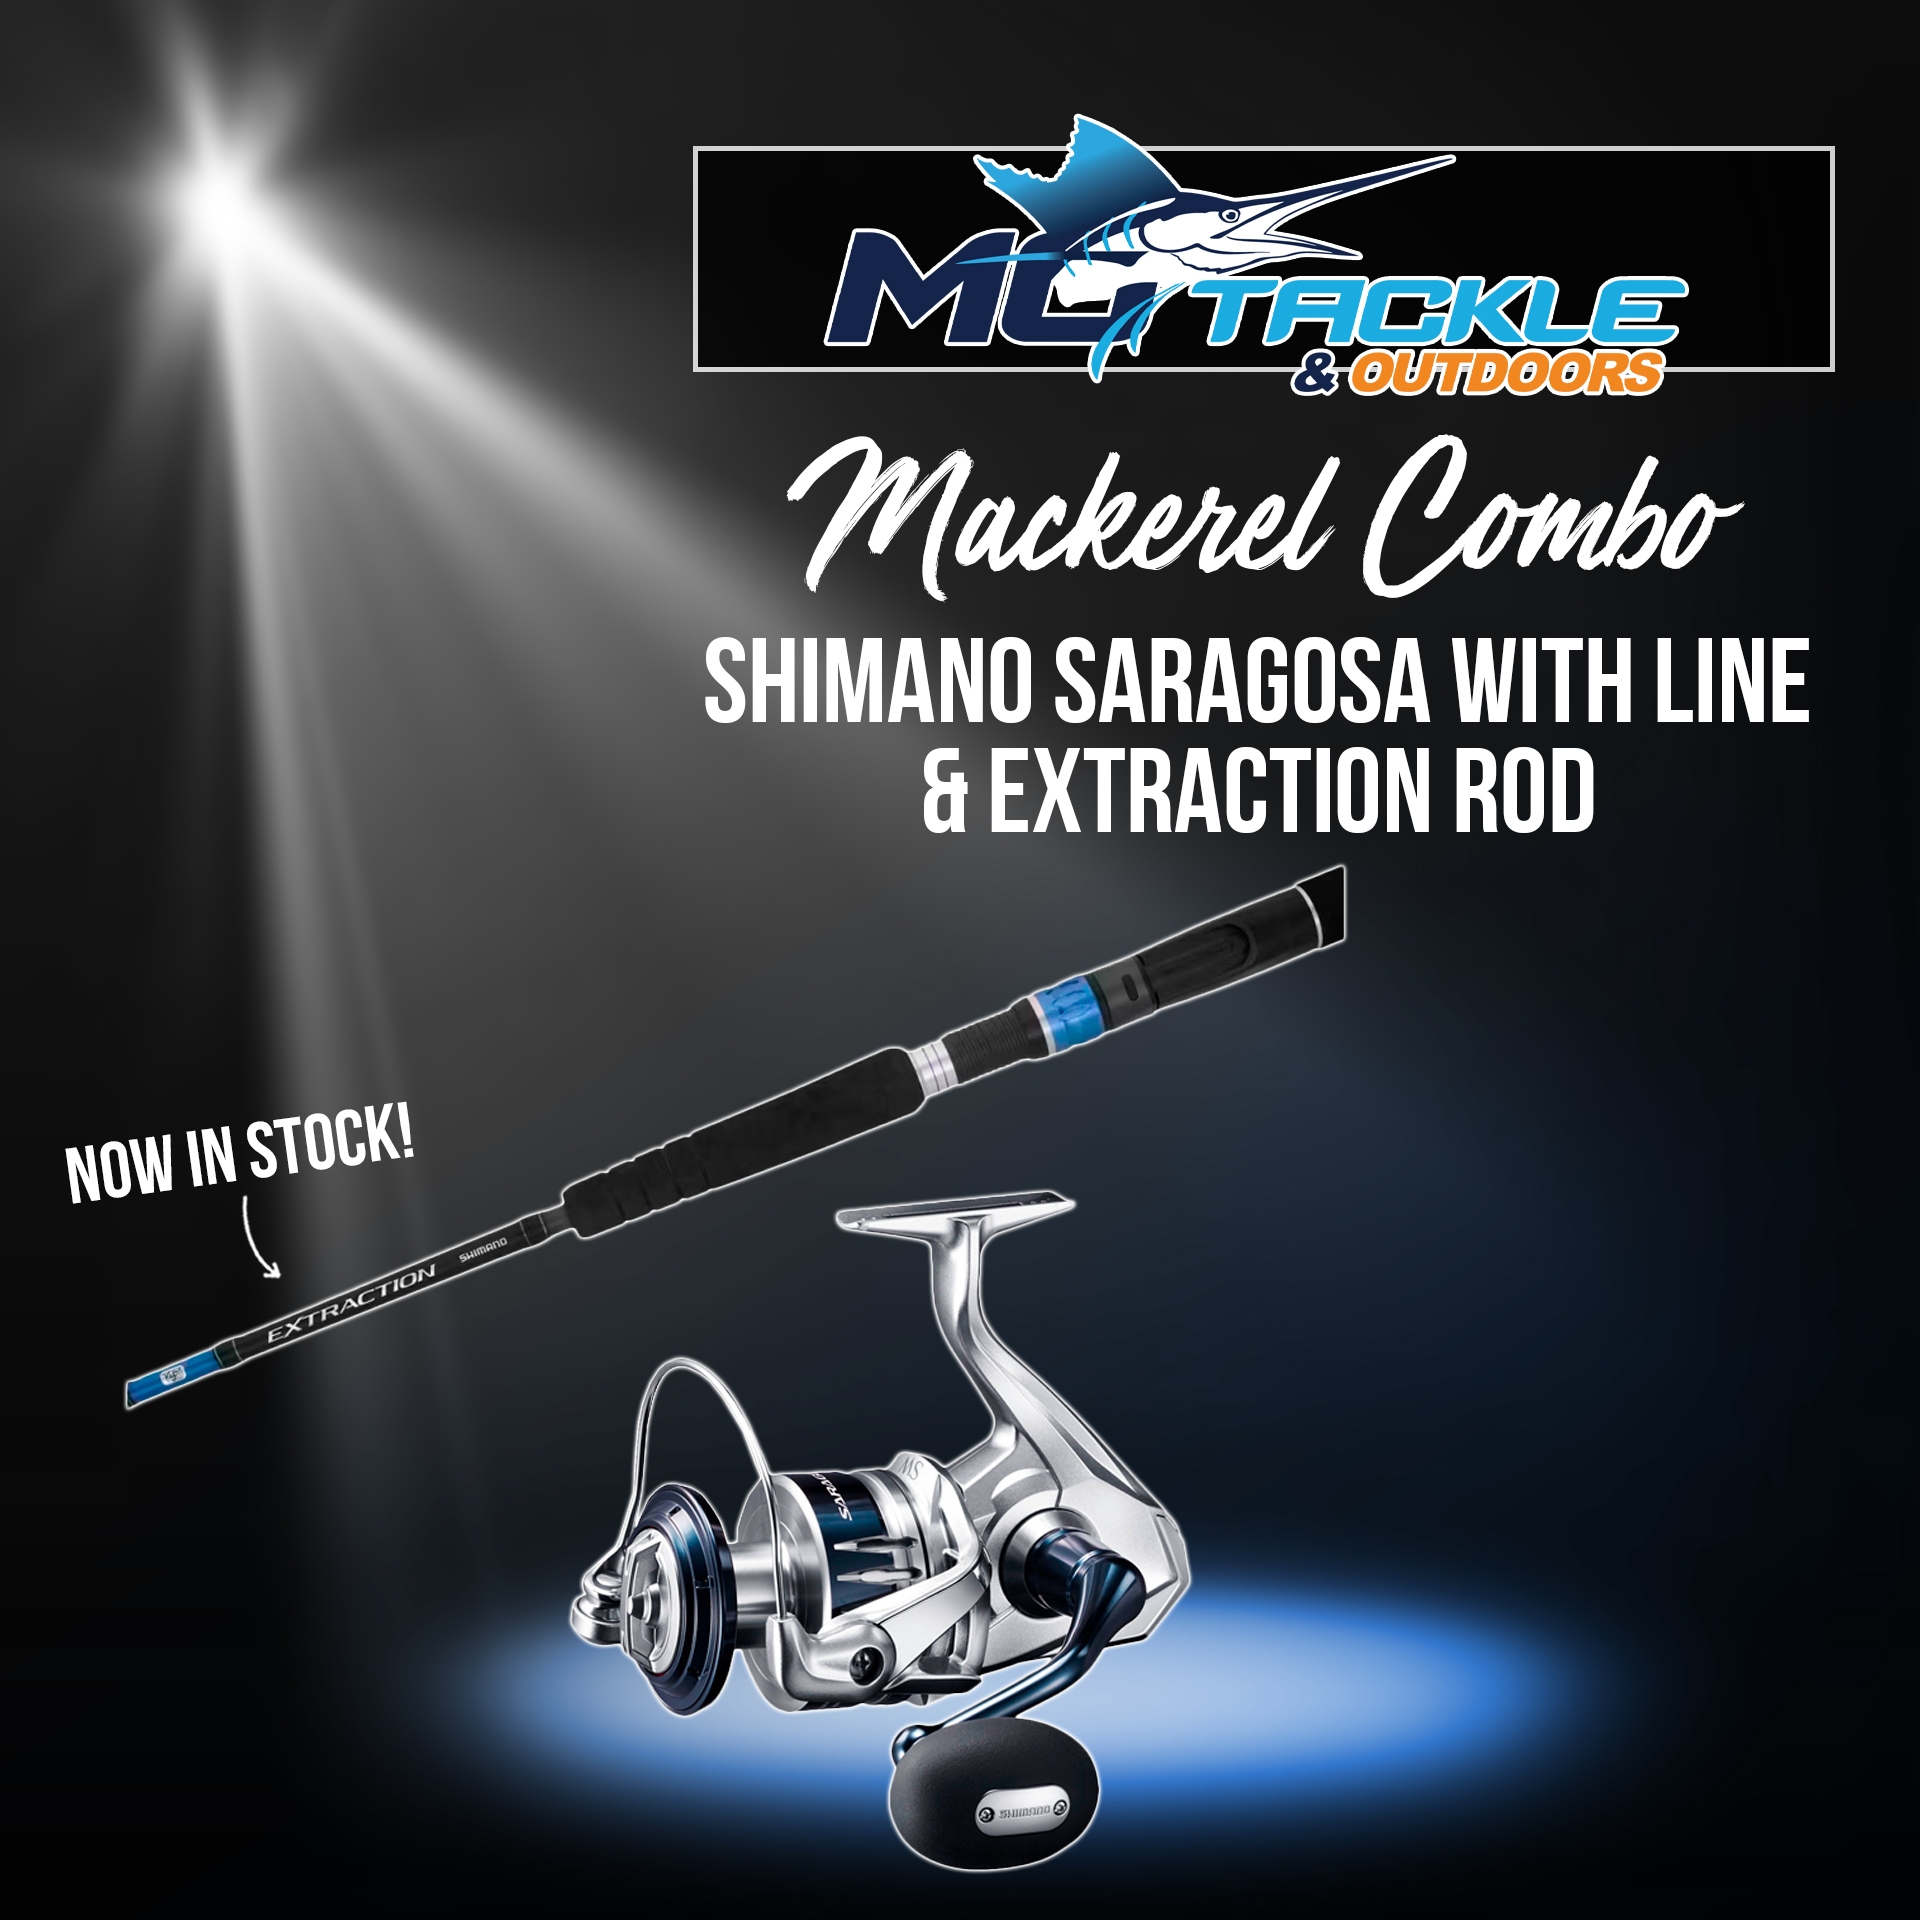 New - Shimano Saragosa & Extraction Spin Mackerel Combo